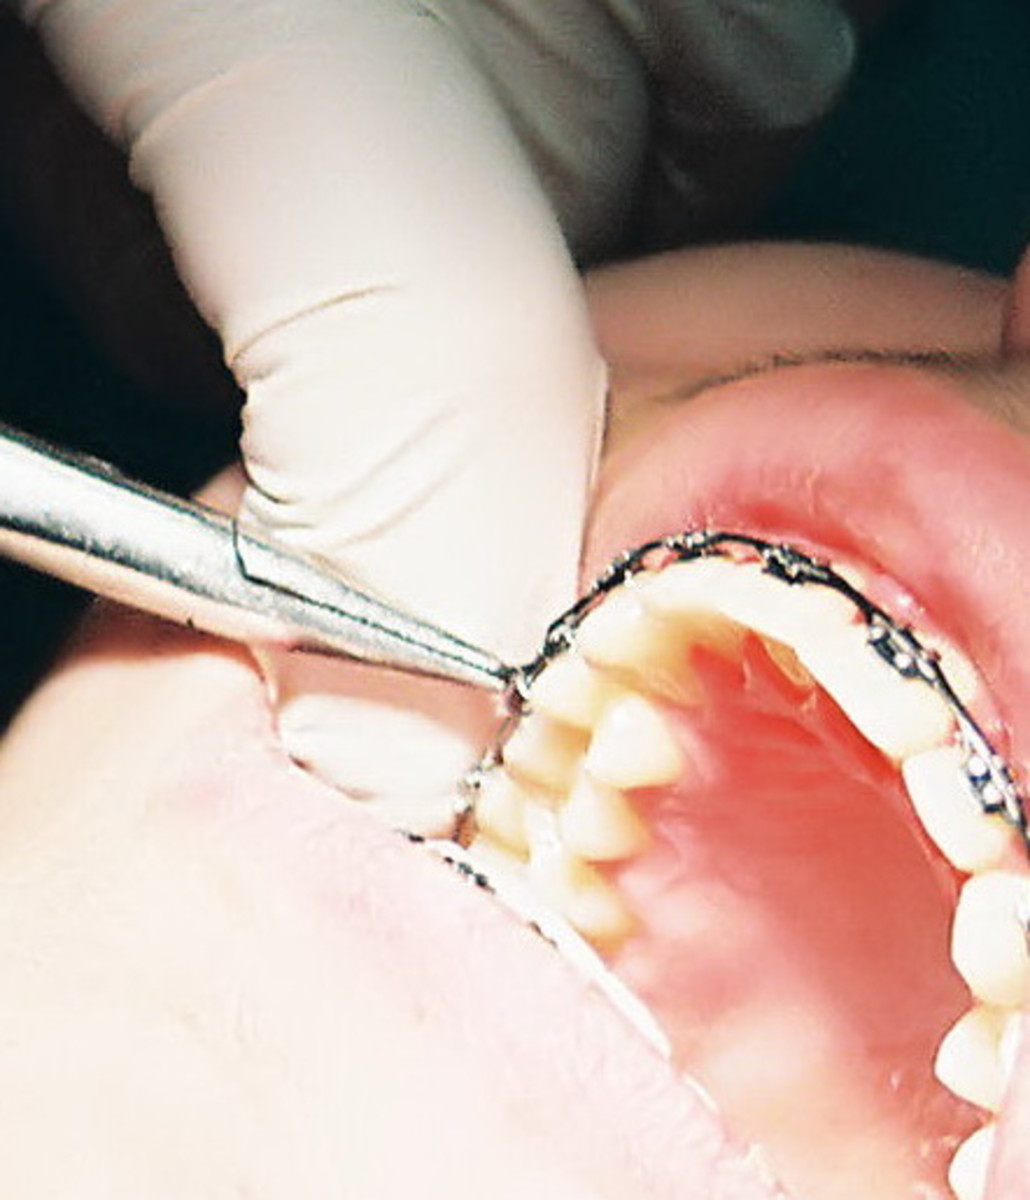 Getting braces on teeth